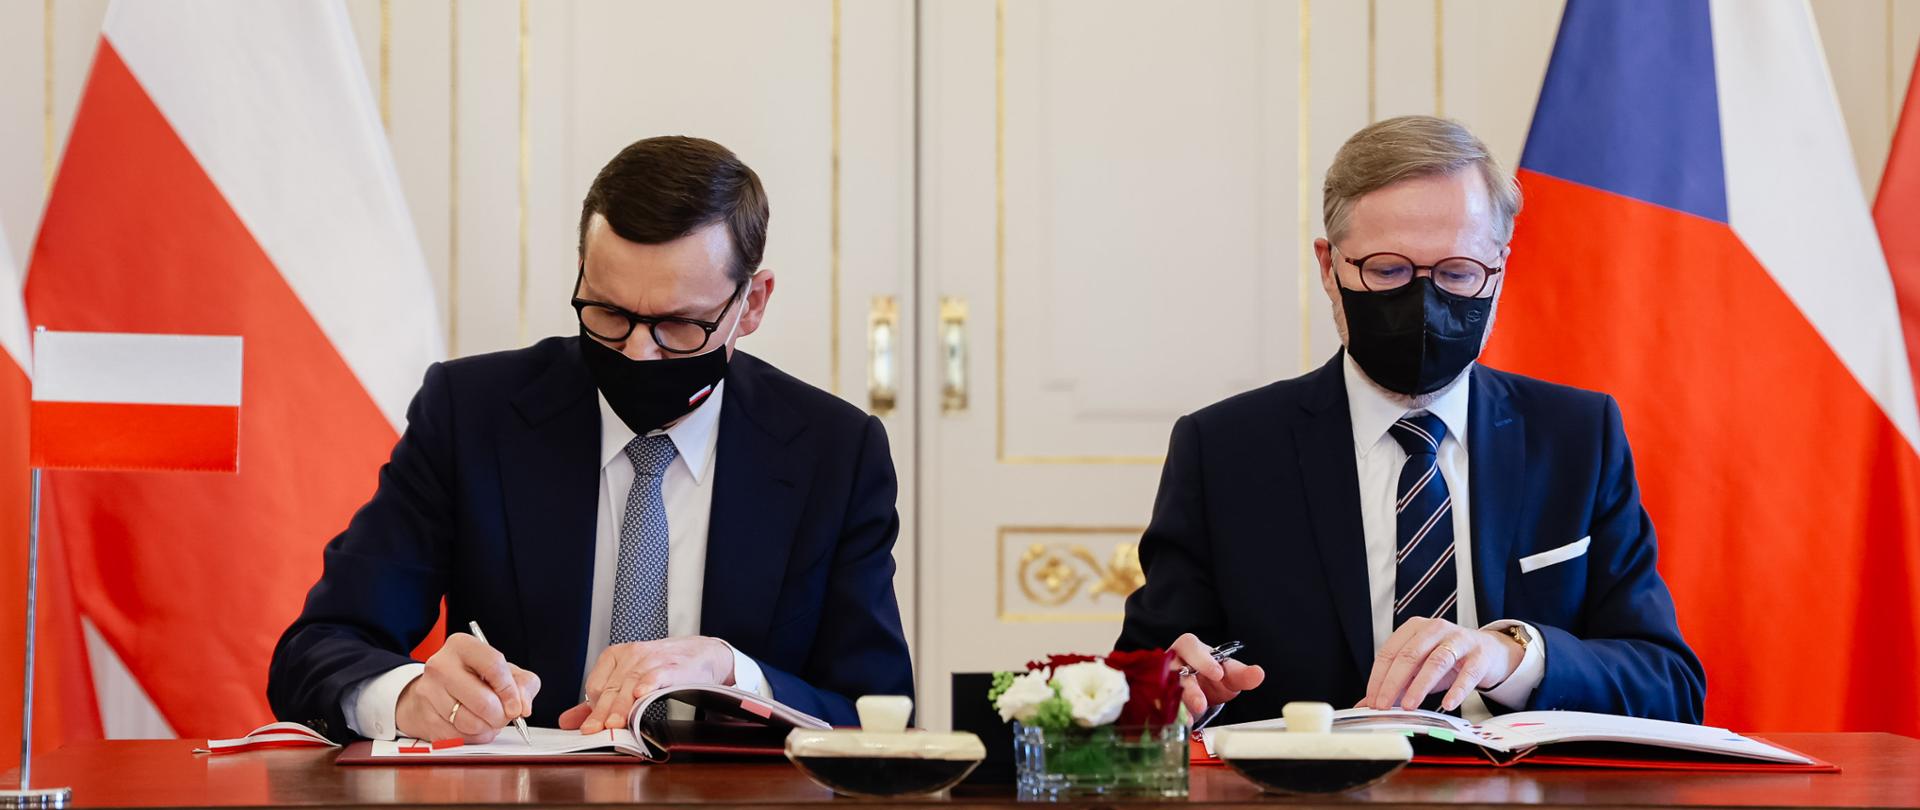 Podpisanie deklaracji przez premiera Mateusza Morawieckiego i premiera Czech.